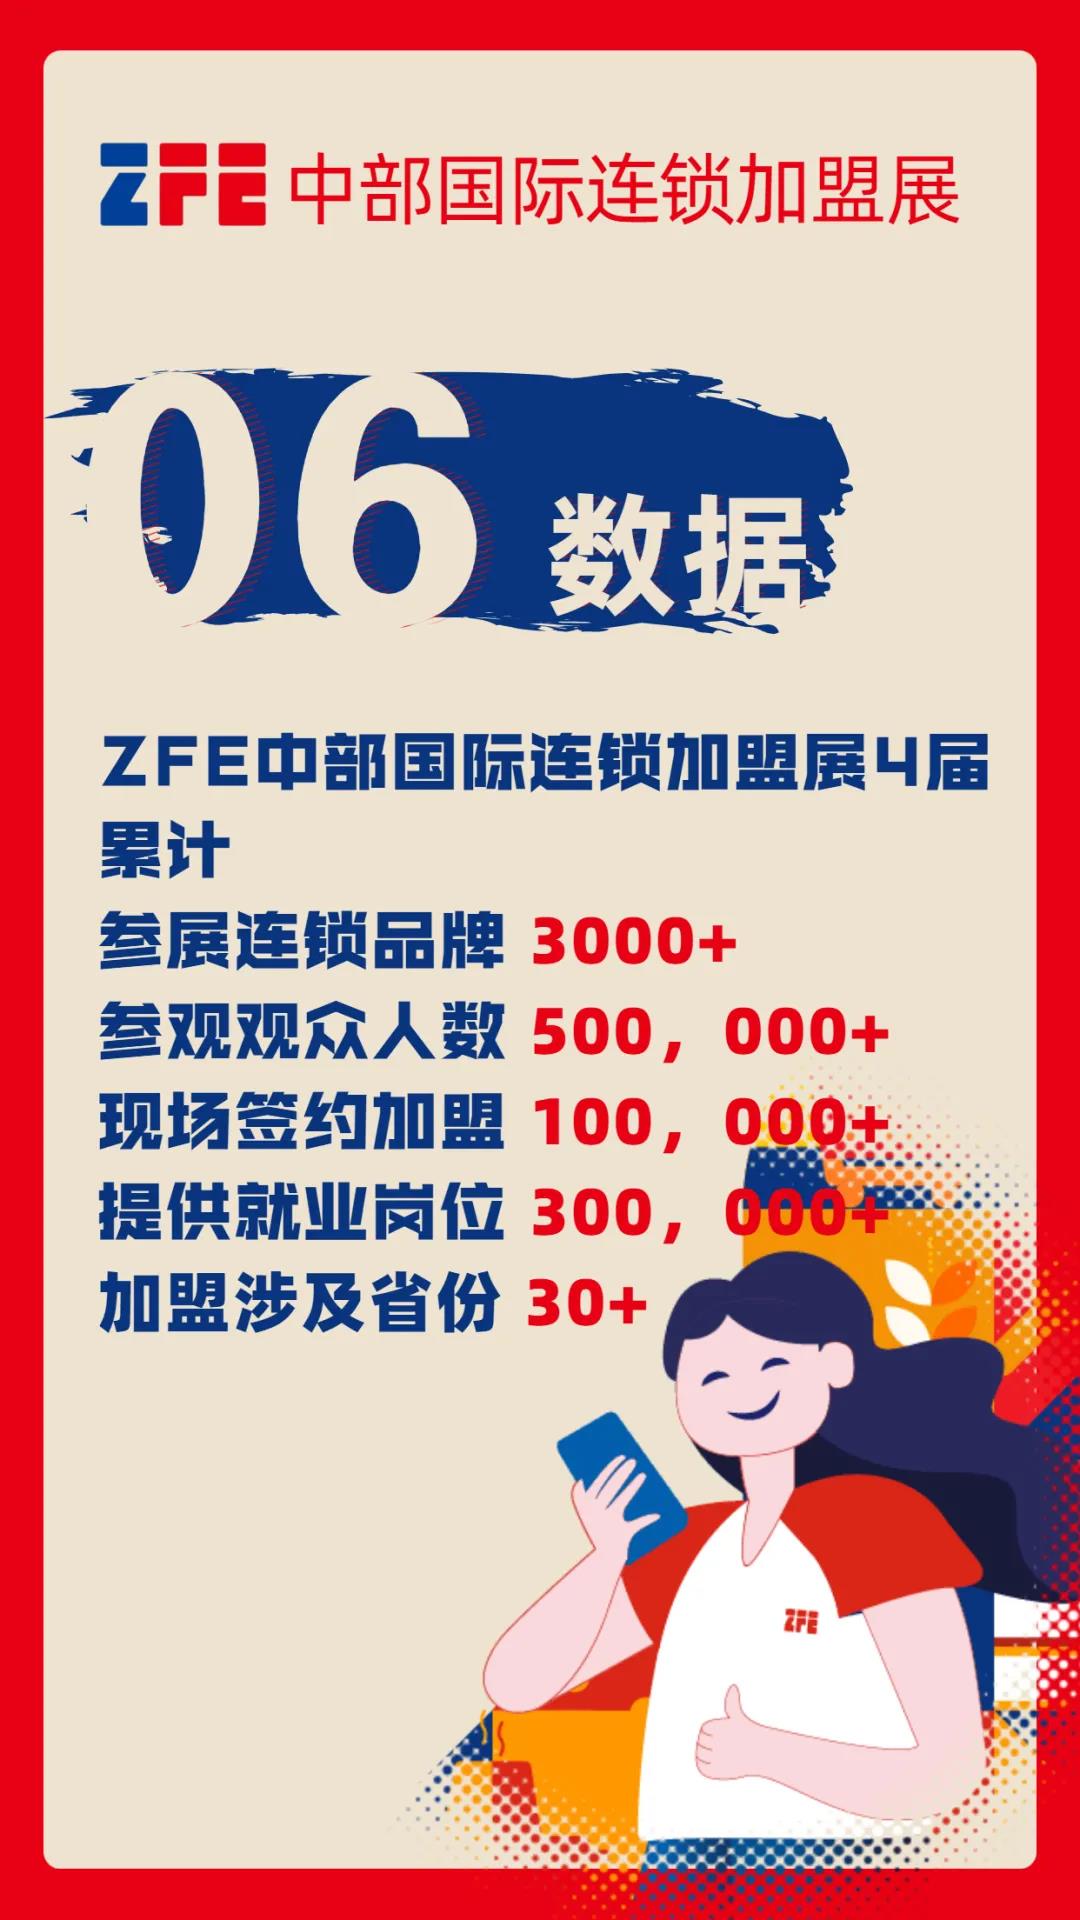 连锁加盟品牌选择ZFE中部国际连锁加盟展的8个理由(图7)